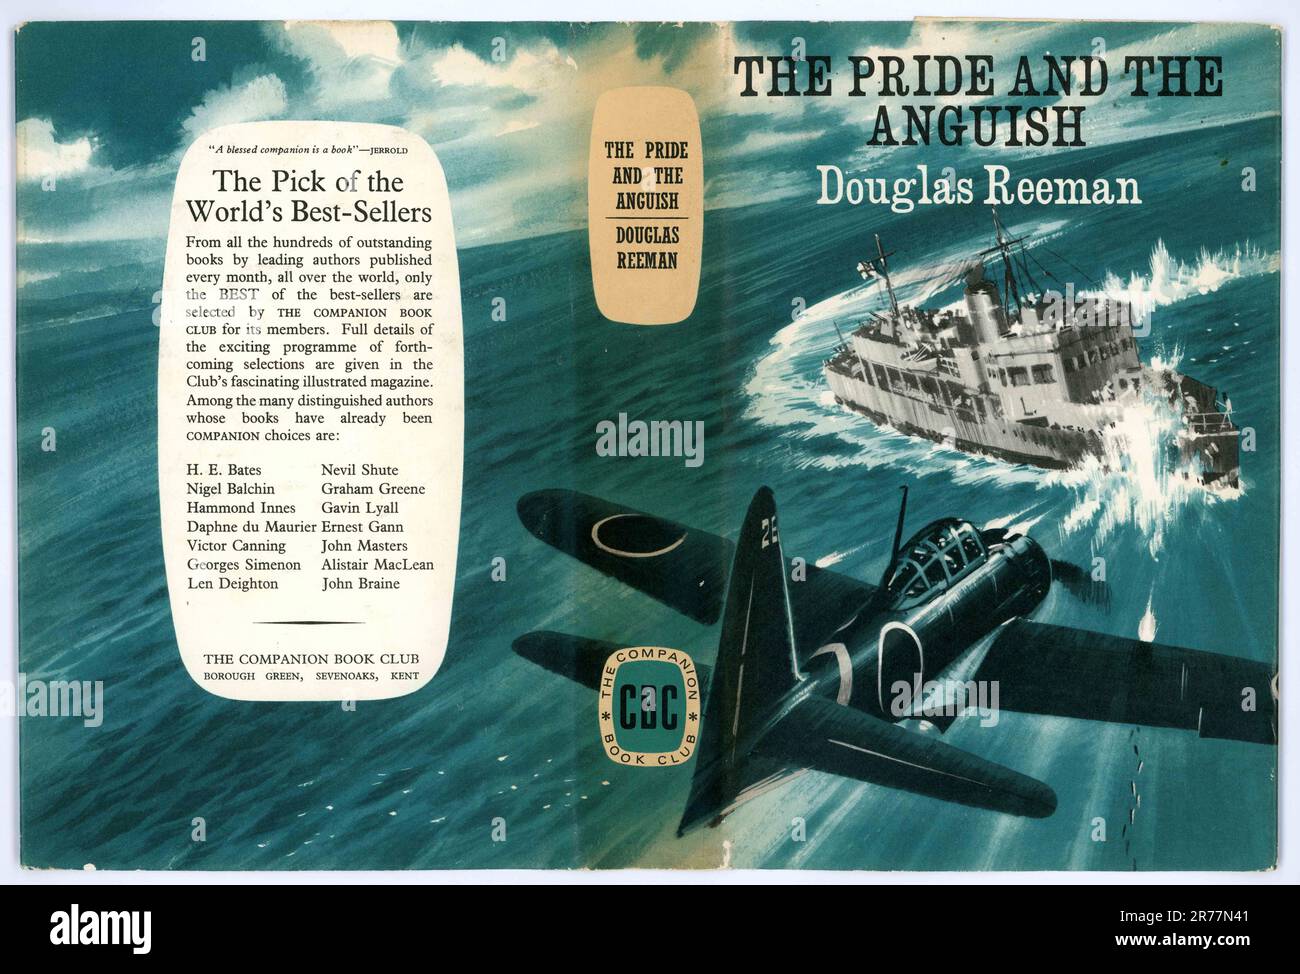 Couverture de livre originale pour la fierté et l'angoisse par Douglas Reeman, publiée en 1968, illustration de couverture par Wilf Hardy. Banque D'Images